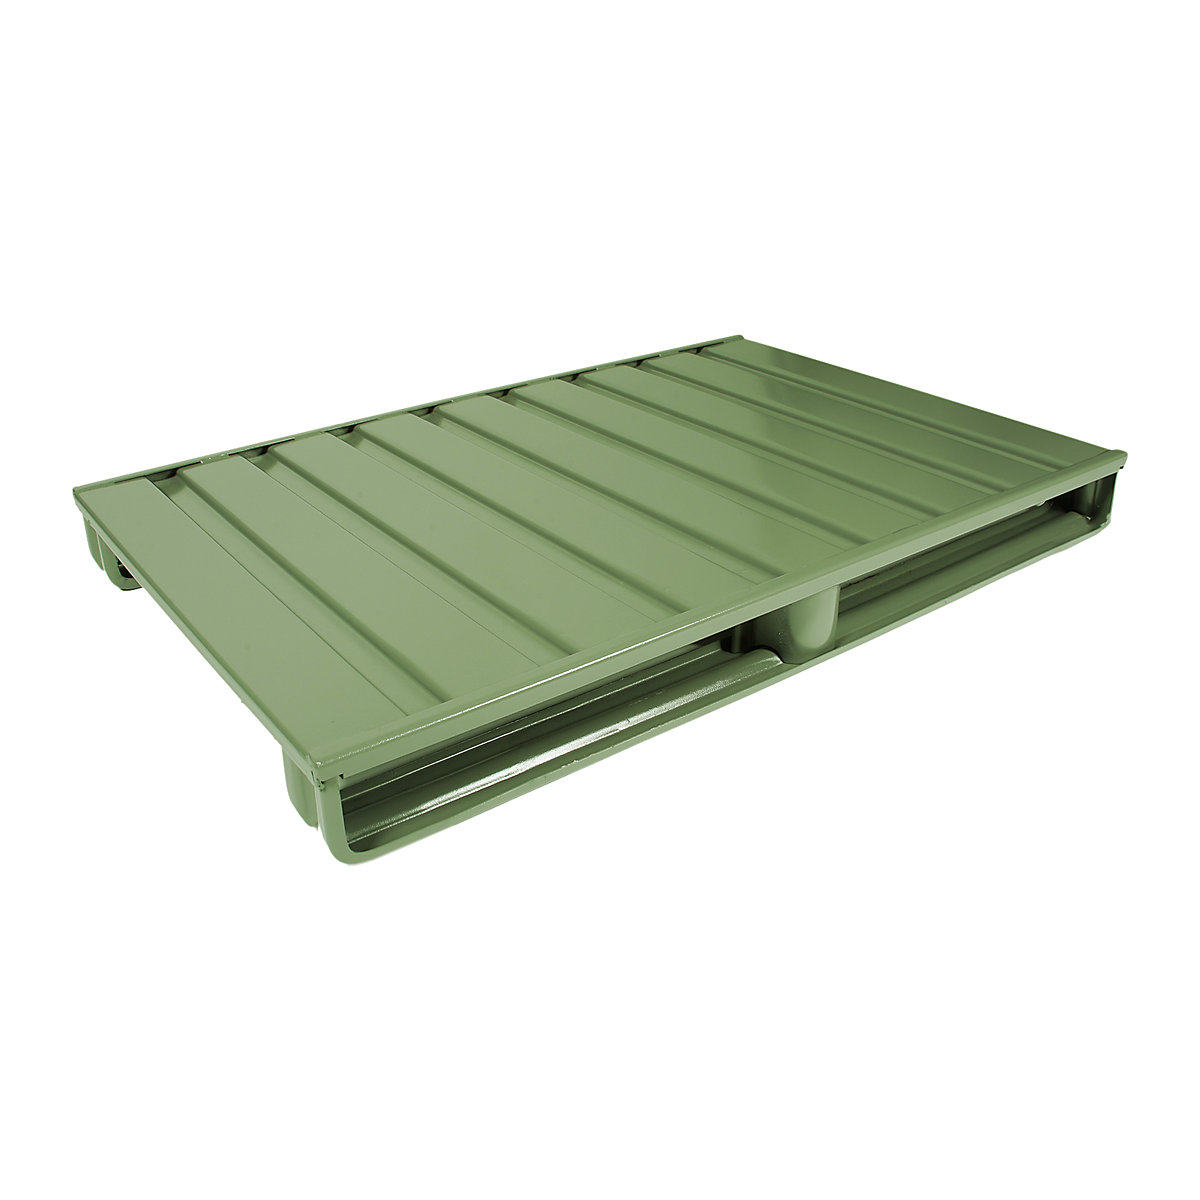 Čelična ravna paleta – Heson, DxŠ 1000 x 800 mm, nosivost 2000 kg, u rezeda zelenoj boji, od 10 kom.-2